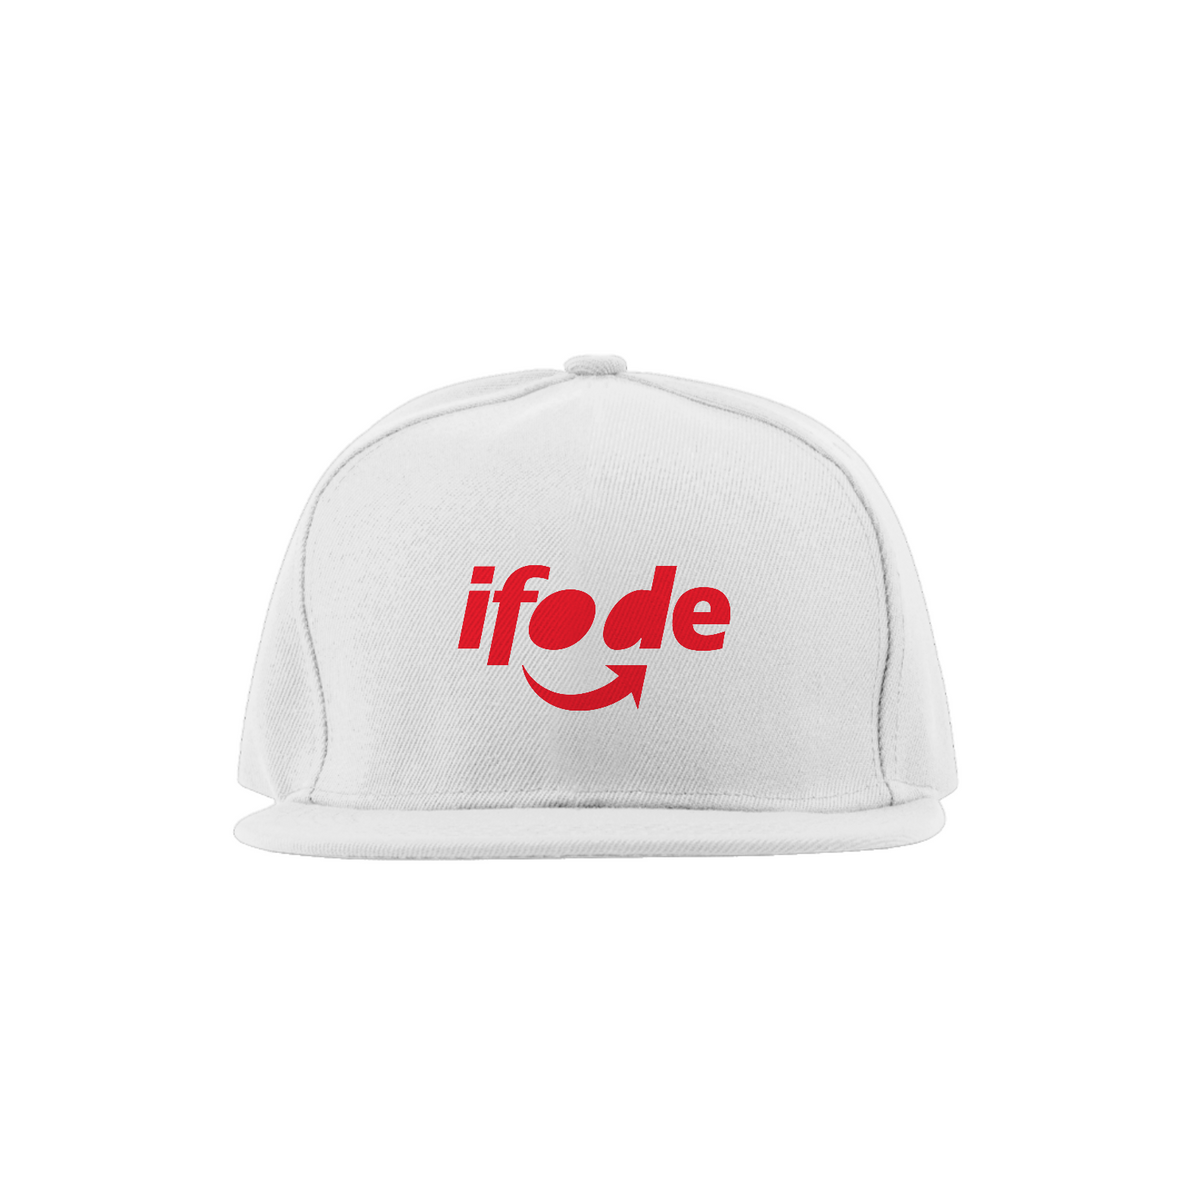 Nome do produto: Ifode - Boné